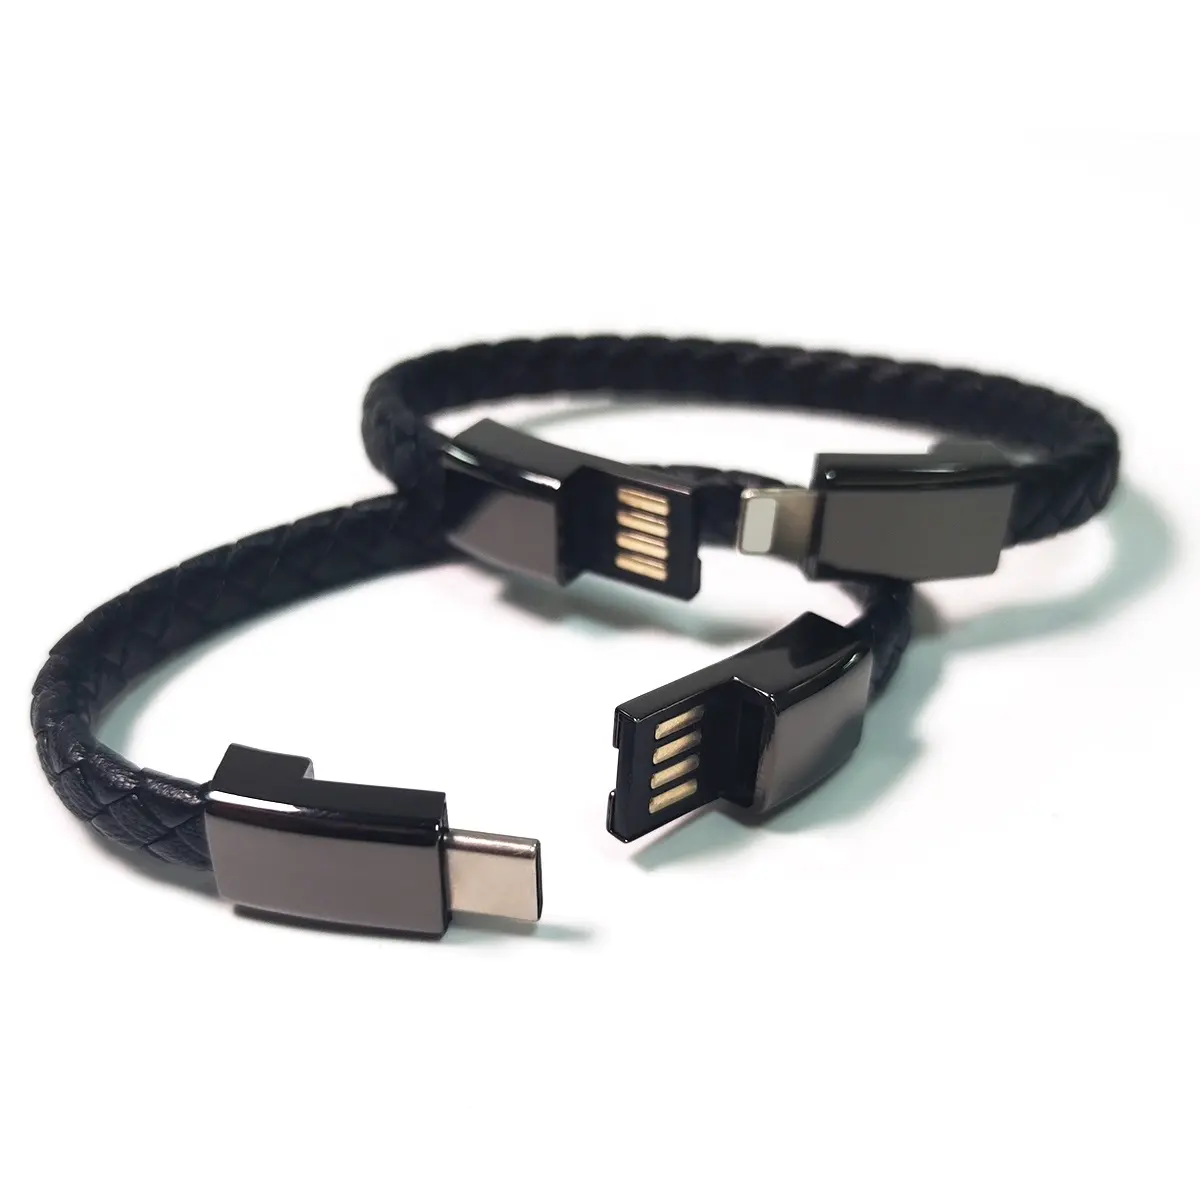 USB סוג C כבל צמיד לגברים סמסונג S8 קצר נייד עור מטען